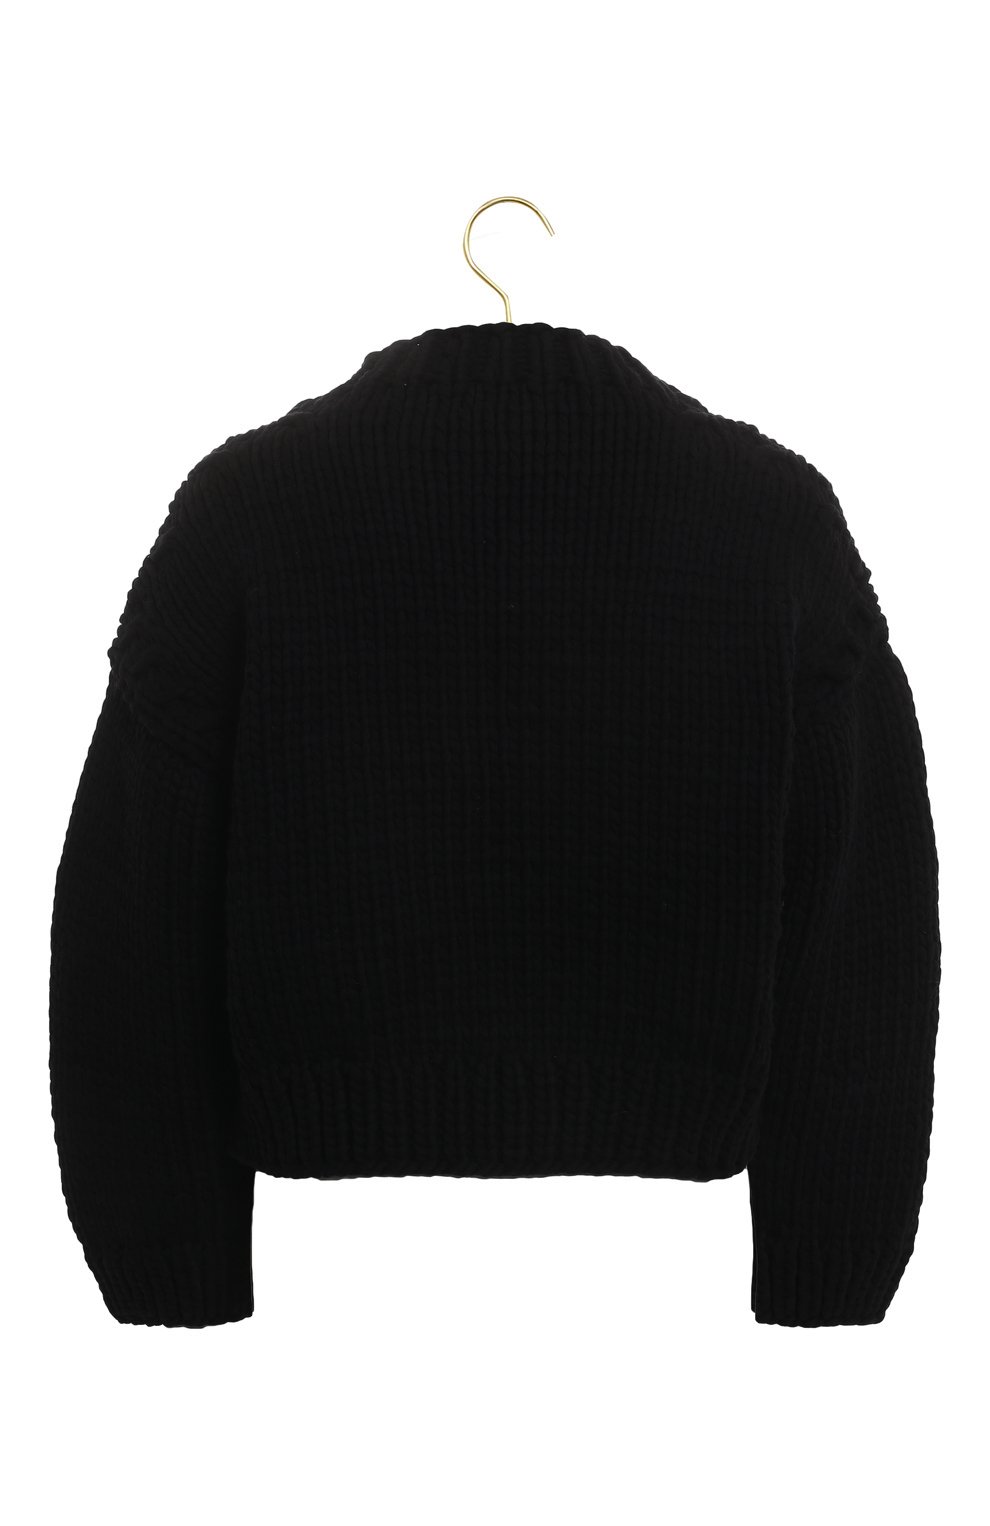 Хлопковый свитер | Kim Haller | Чёрный - 2